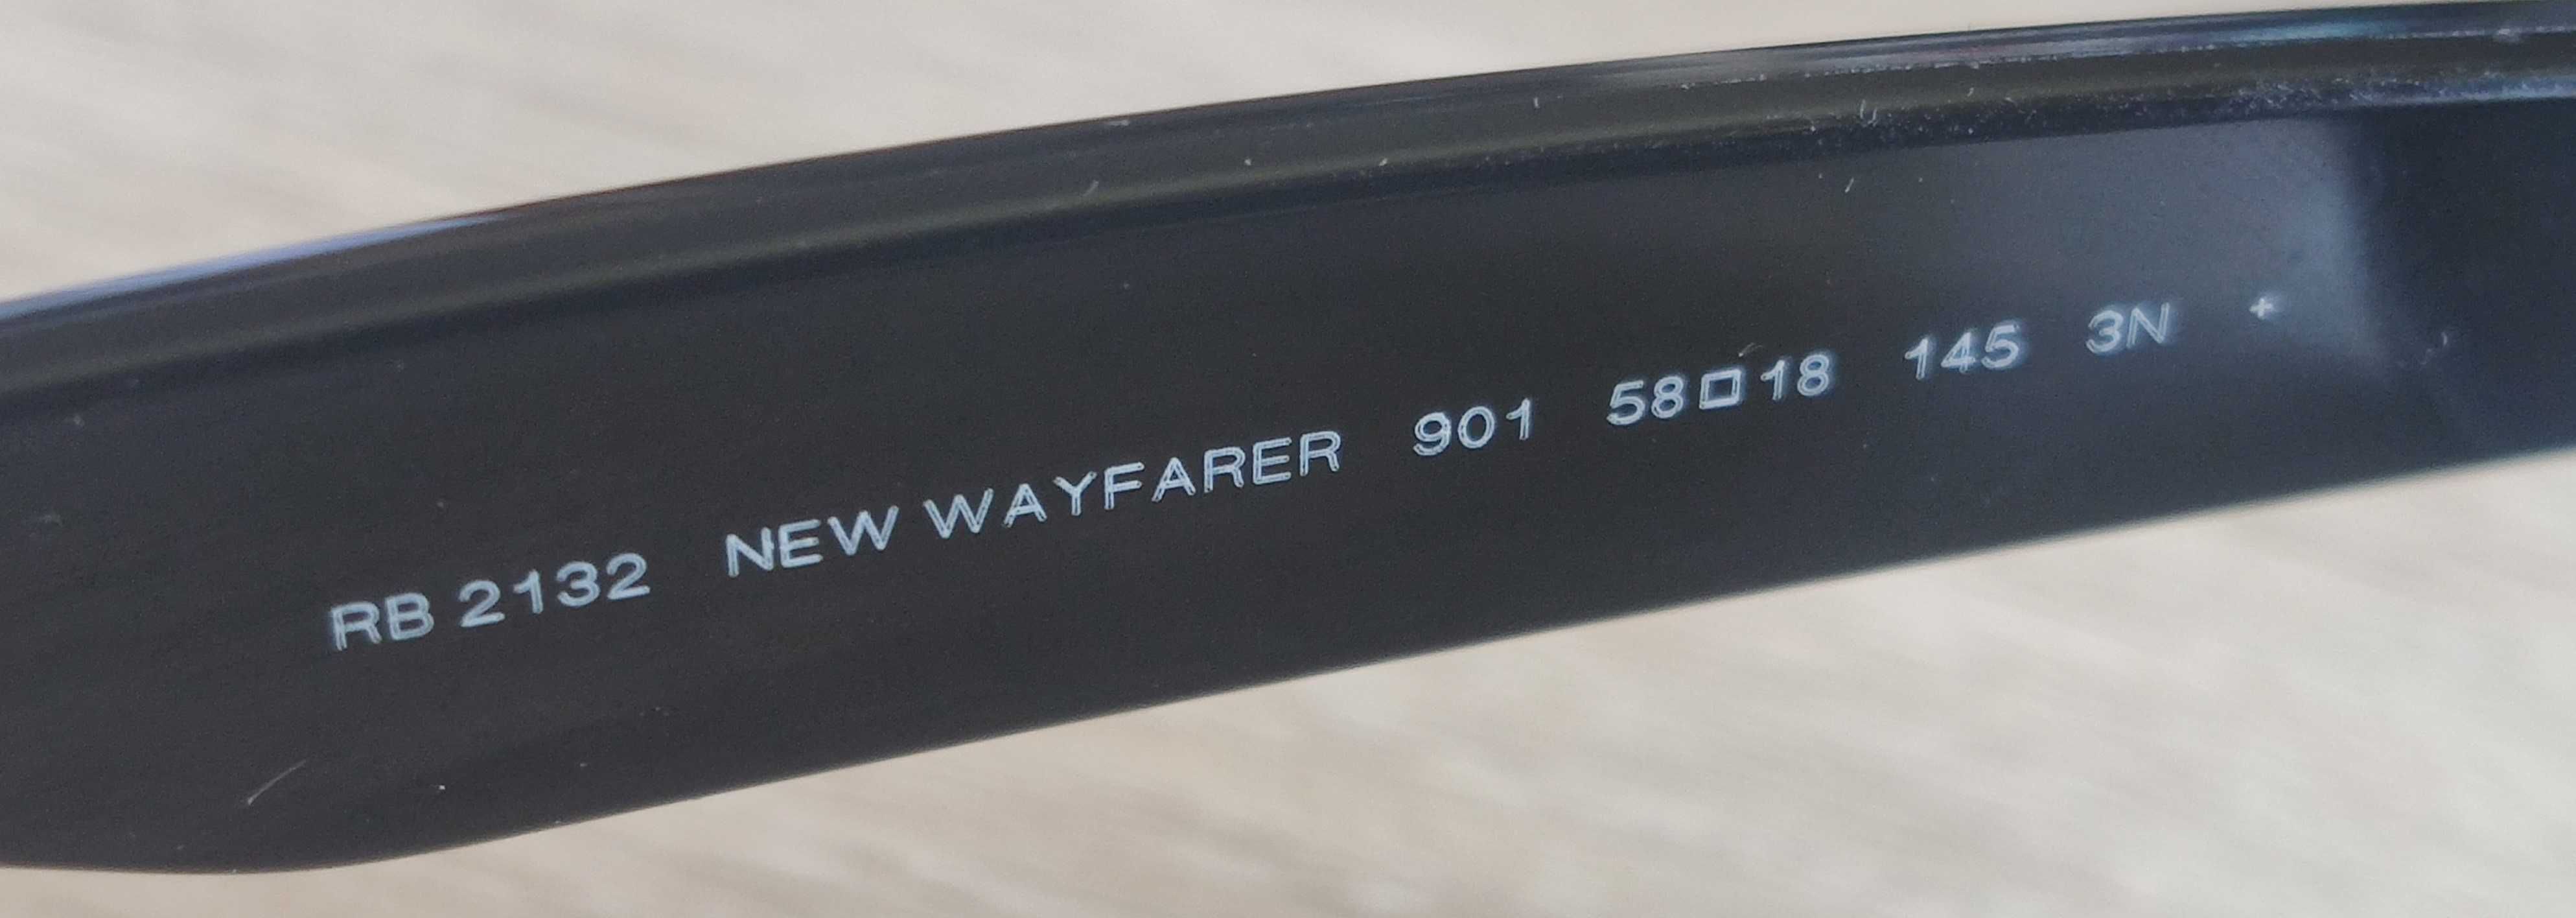 Ray-Ban szkła do okularów przeciwsłonecznych nowe RB2132 Wayfarer 901